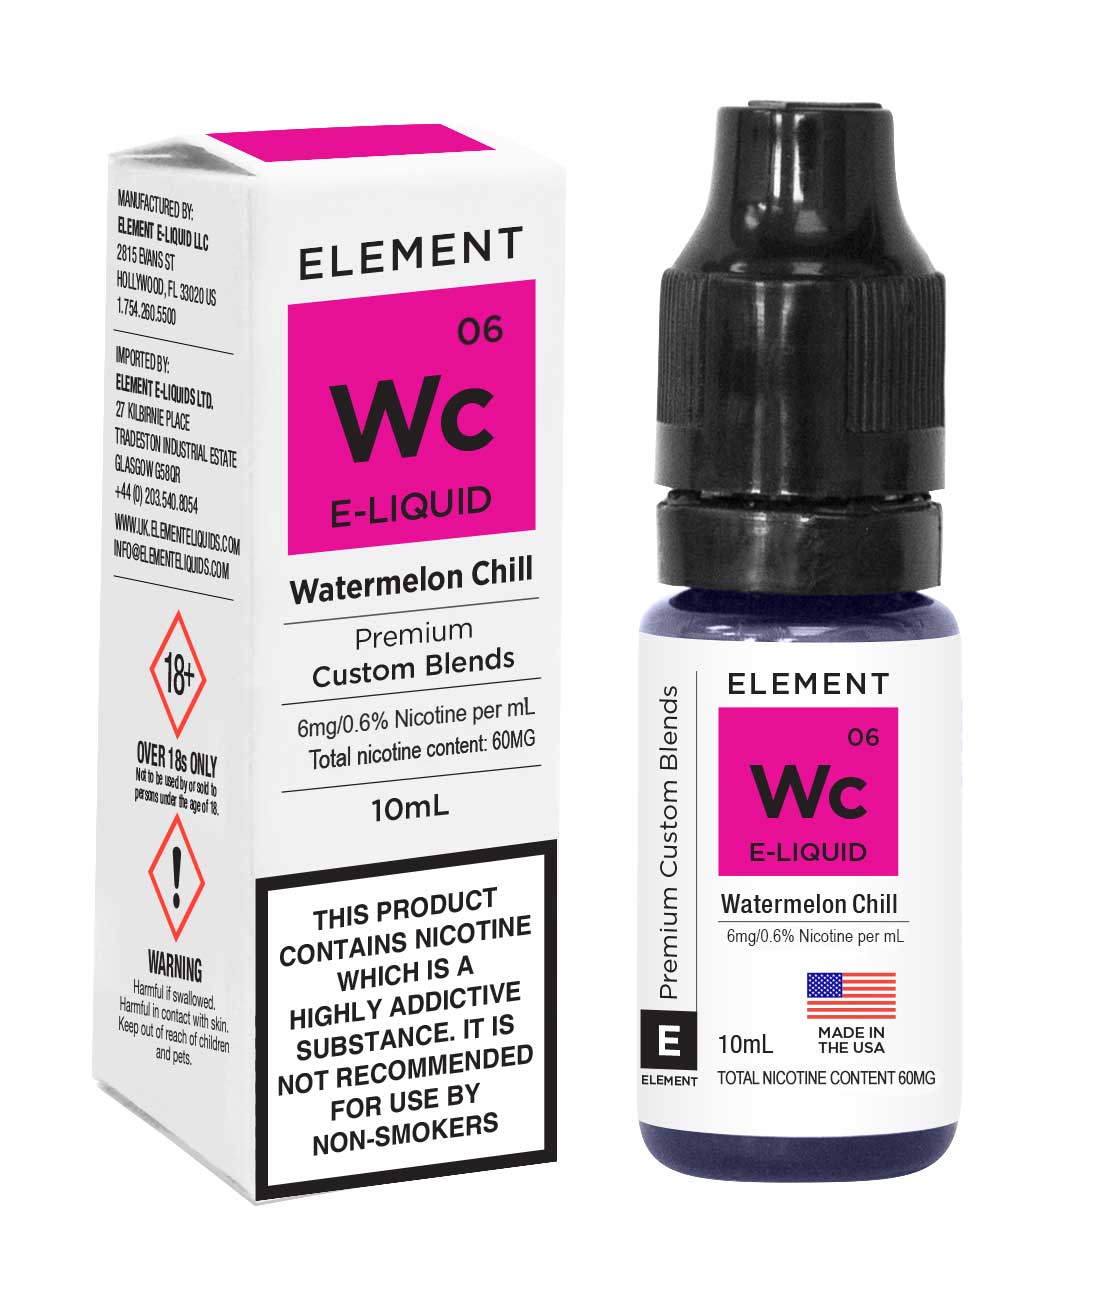 Element E-liquid Watermelon Chill 10ml - 6mg Nicotine